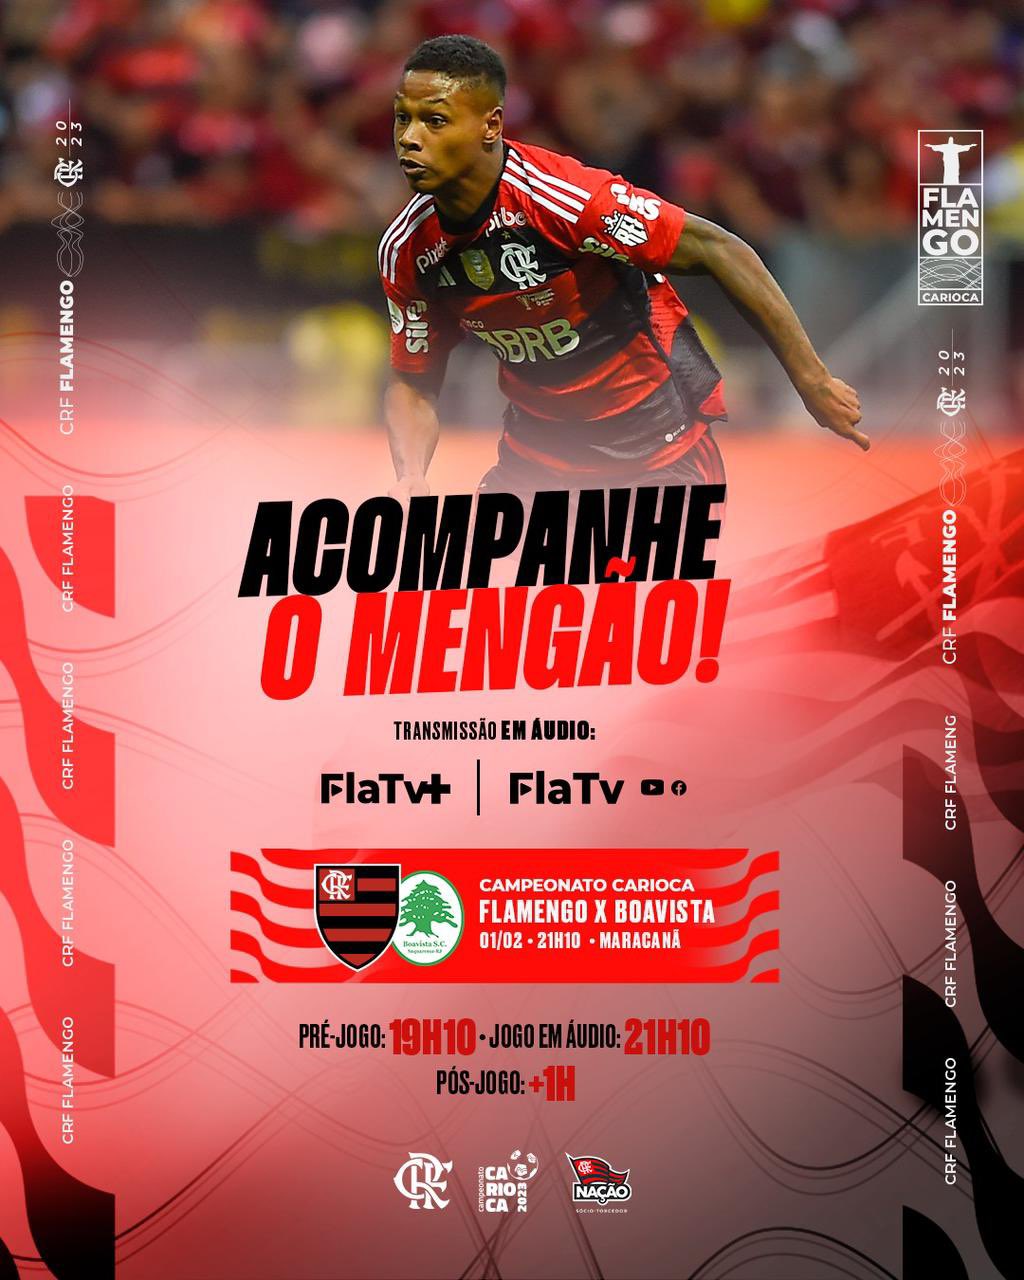 Flamengo - Boavista, Campeonato Carioca